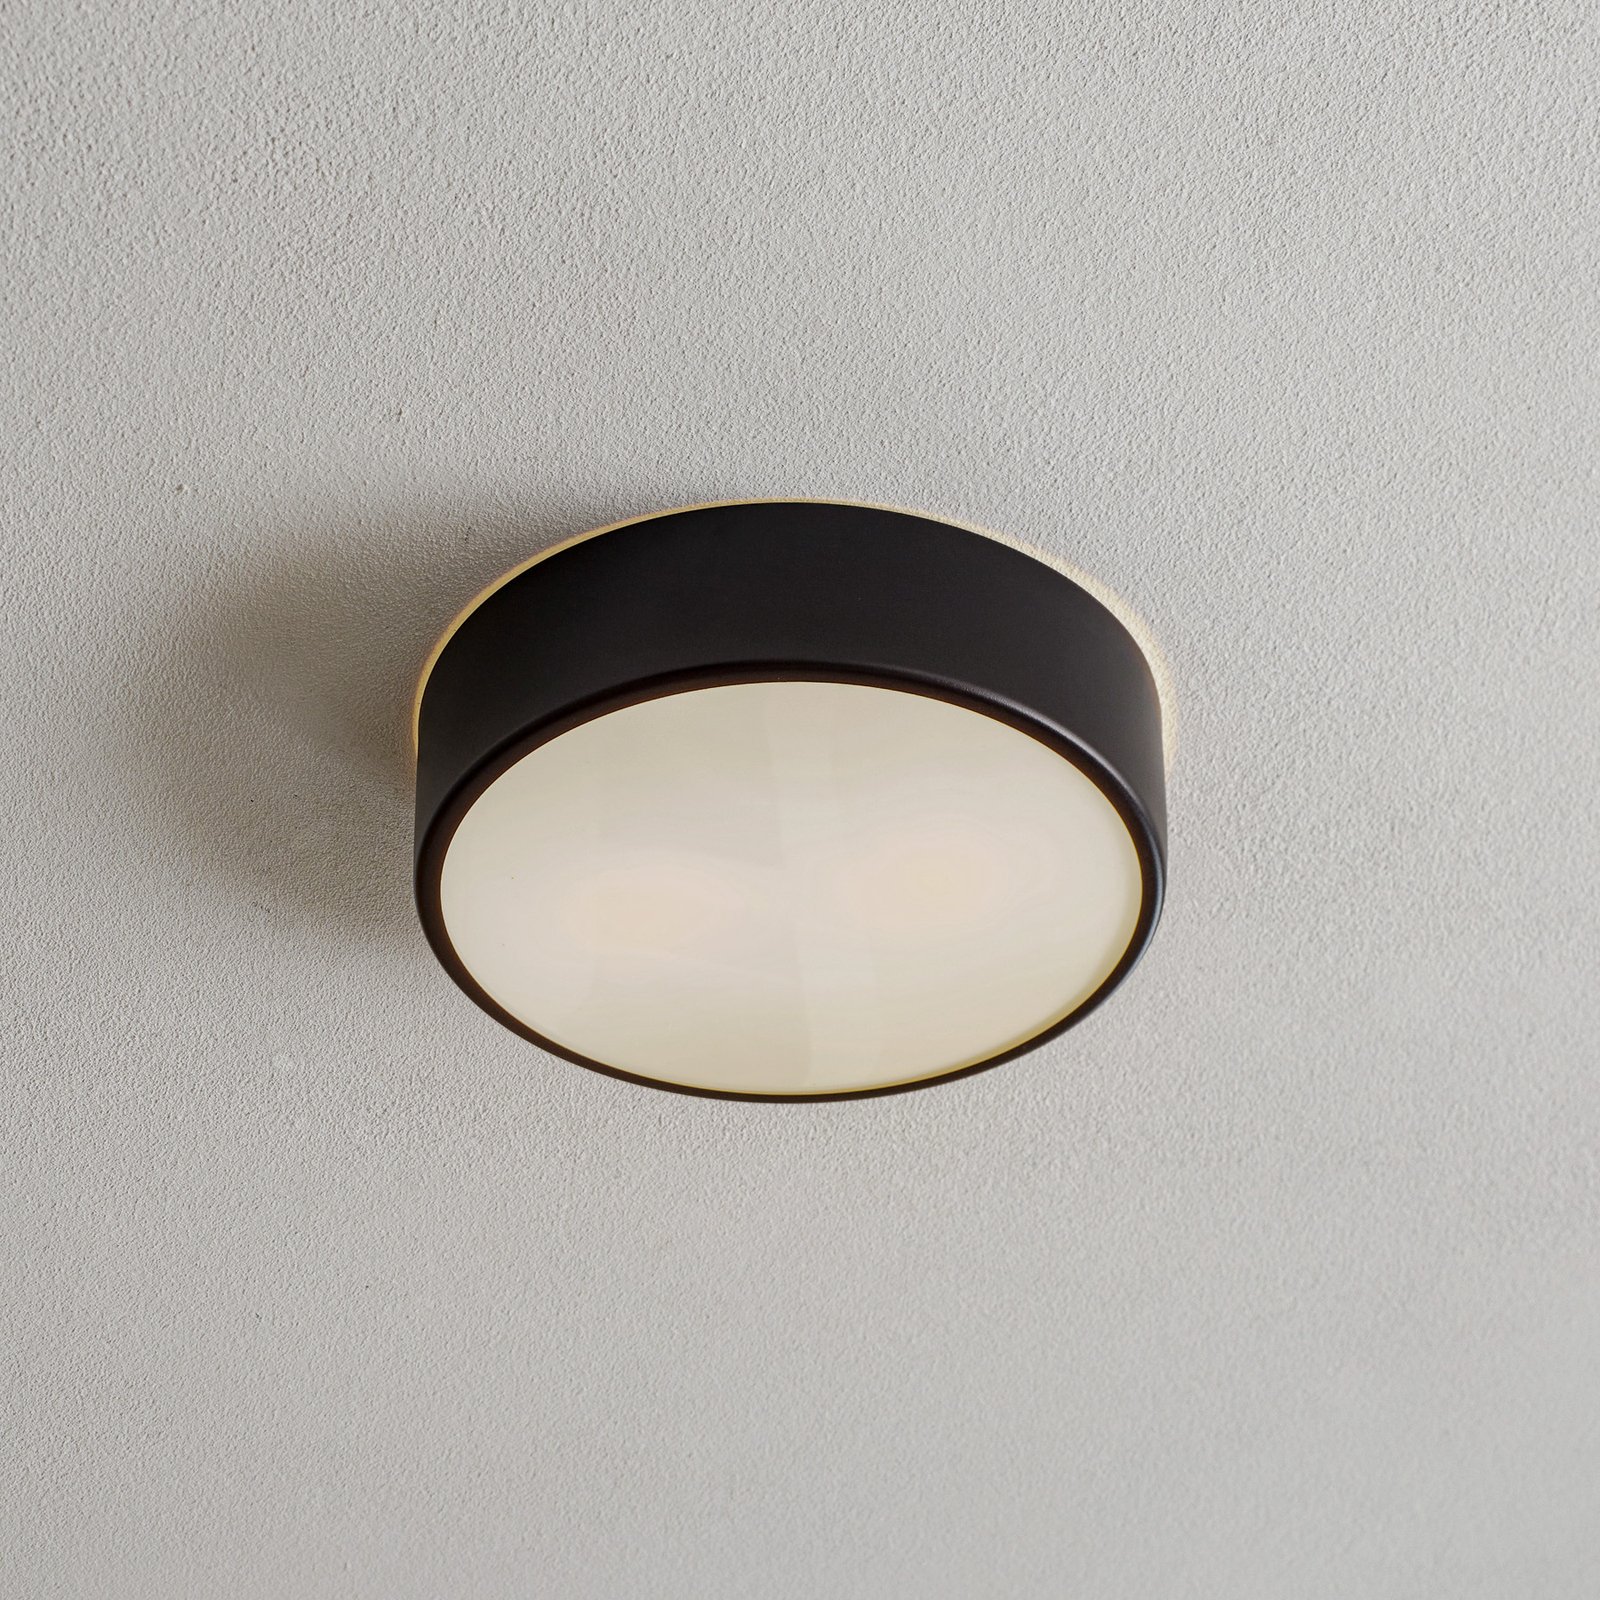 Plafondlamp Cleo 300, IP54, Ø 30 cm zwart